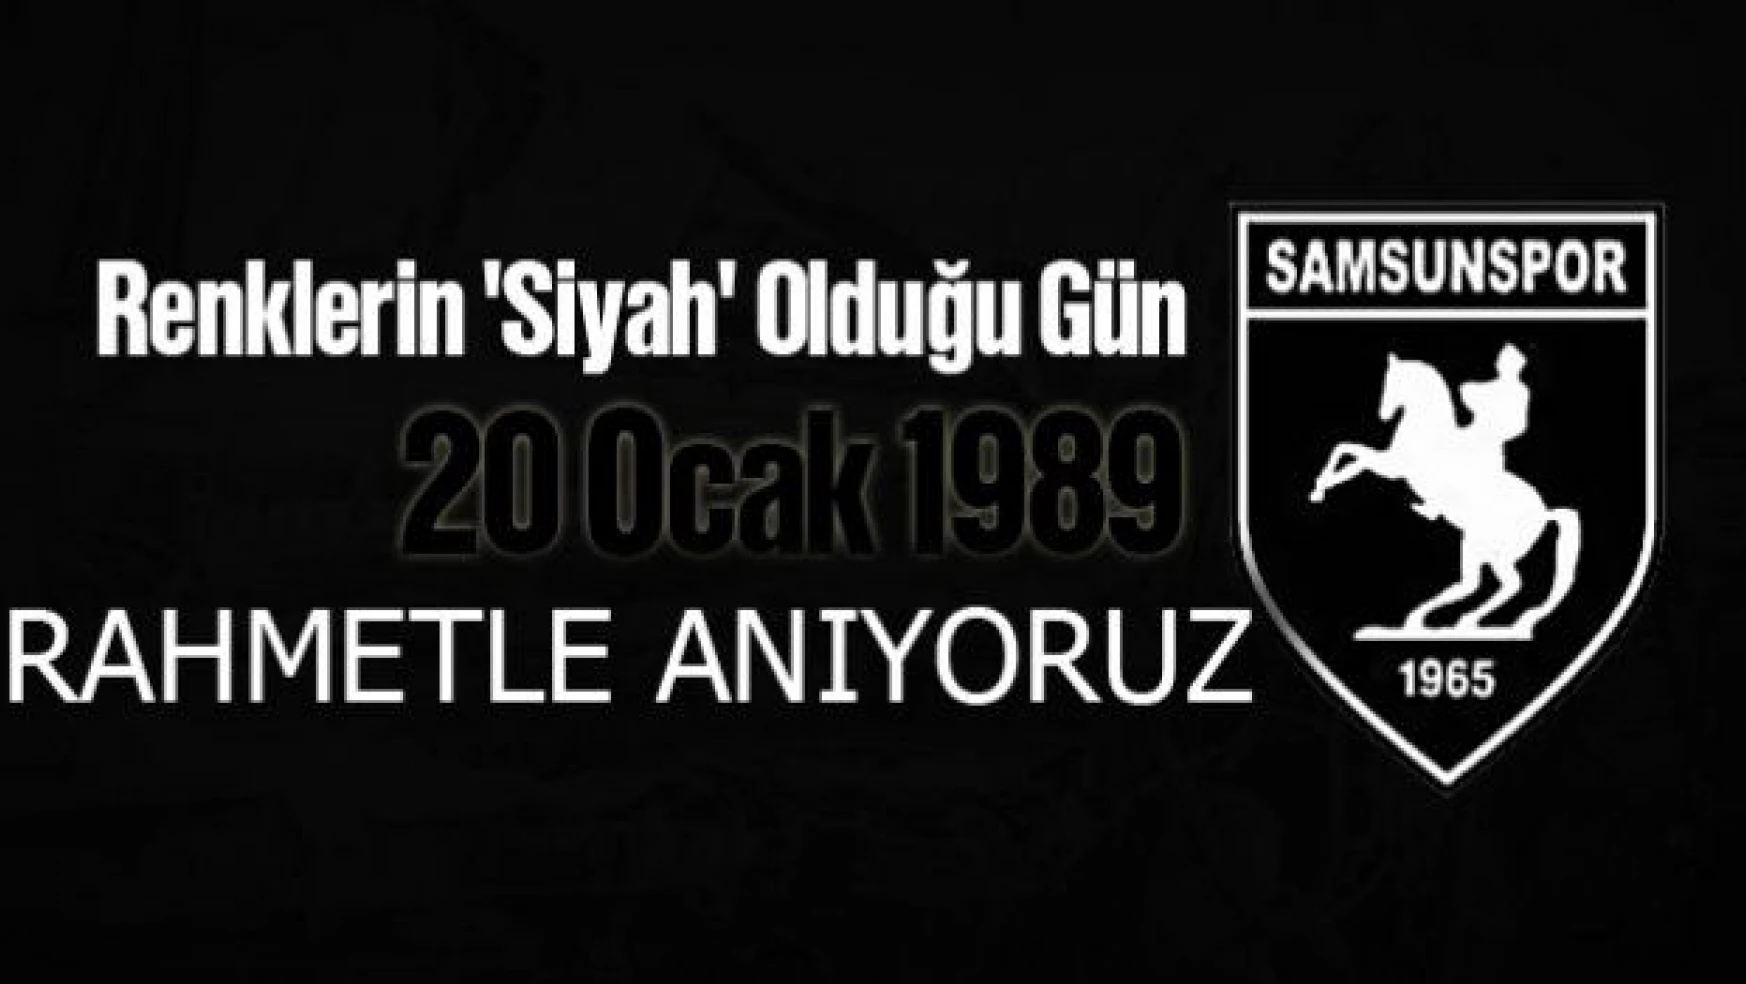 Samsunspor için renklerin siyah olduğu gün: 20 Ocak 1989